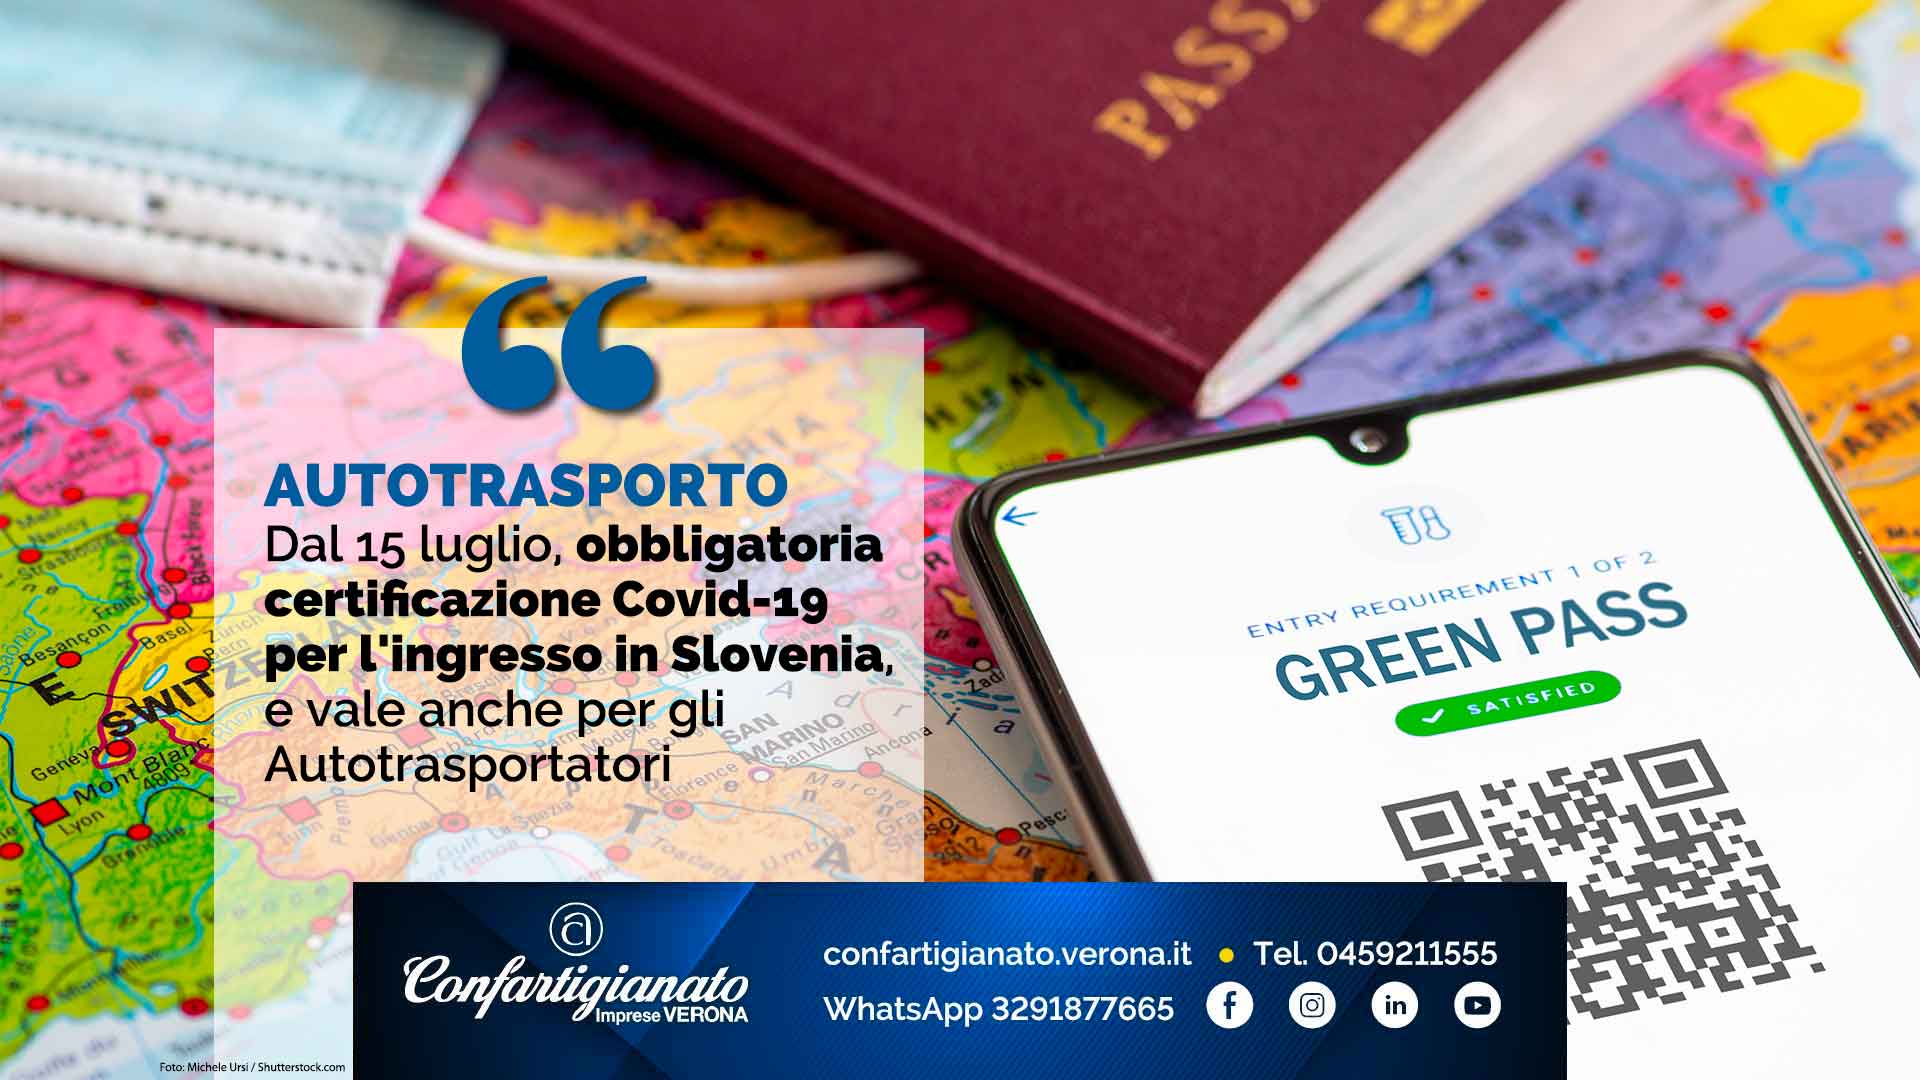 AUTOTRASPORTO – Dal 15 luglio, obbligatoria certificazione Covid-19 per l'ingresso in Slovenia, e vale anche per gli Autotrasportatori